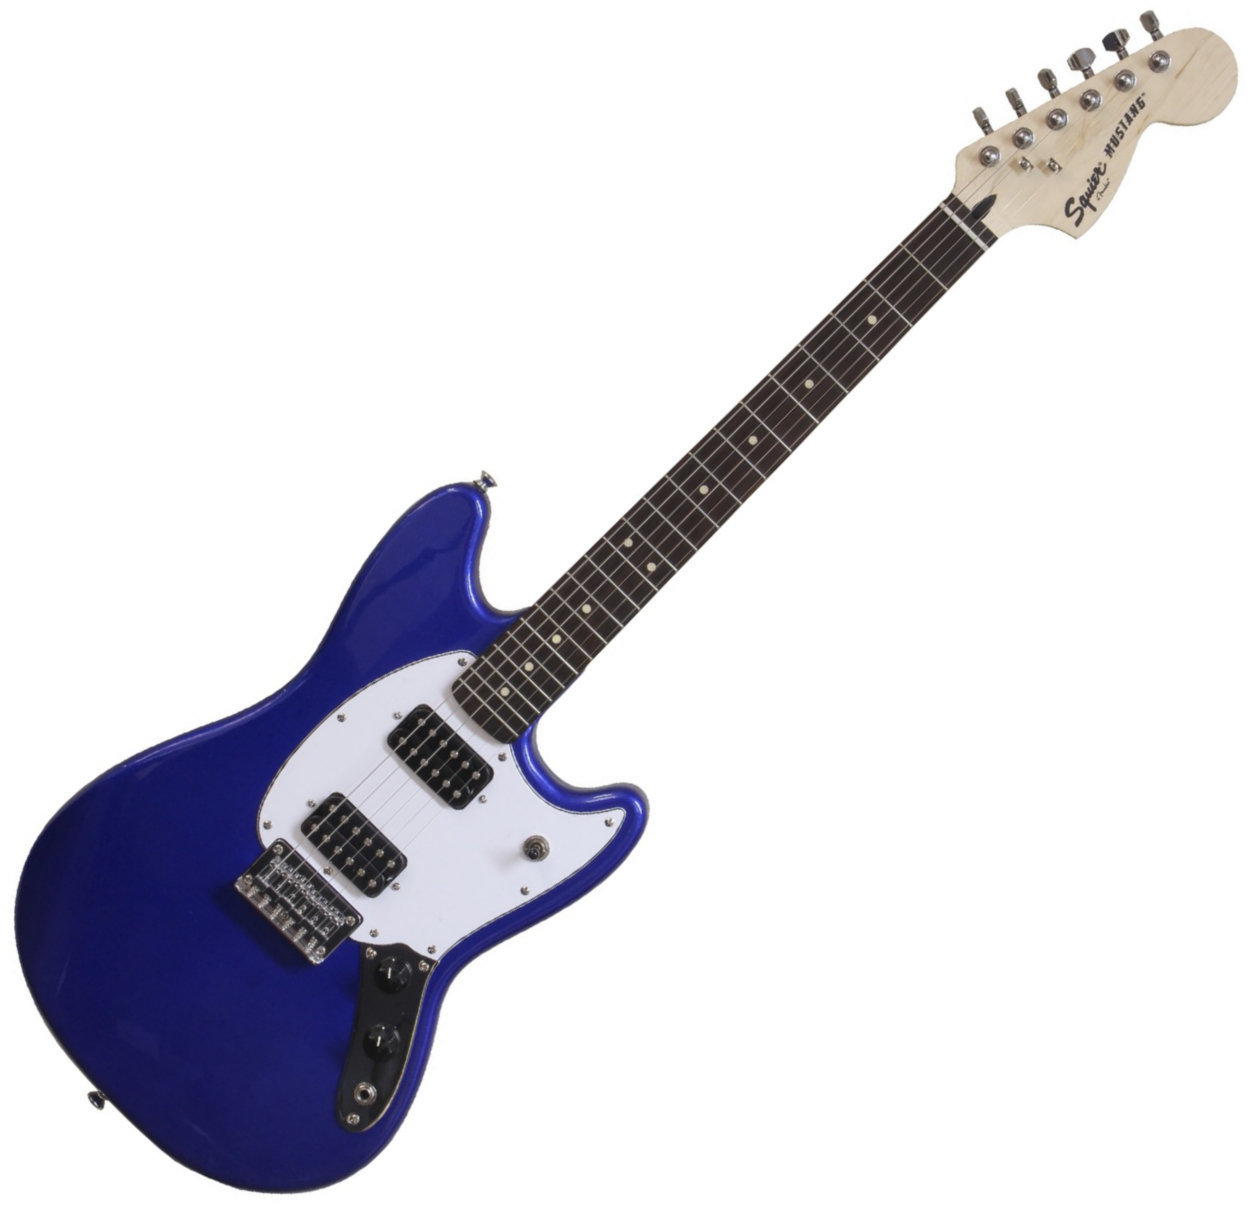 Sähkökitara Fender Squier Bullet Mustang HH RW Imperial Blue